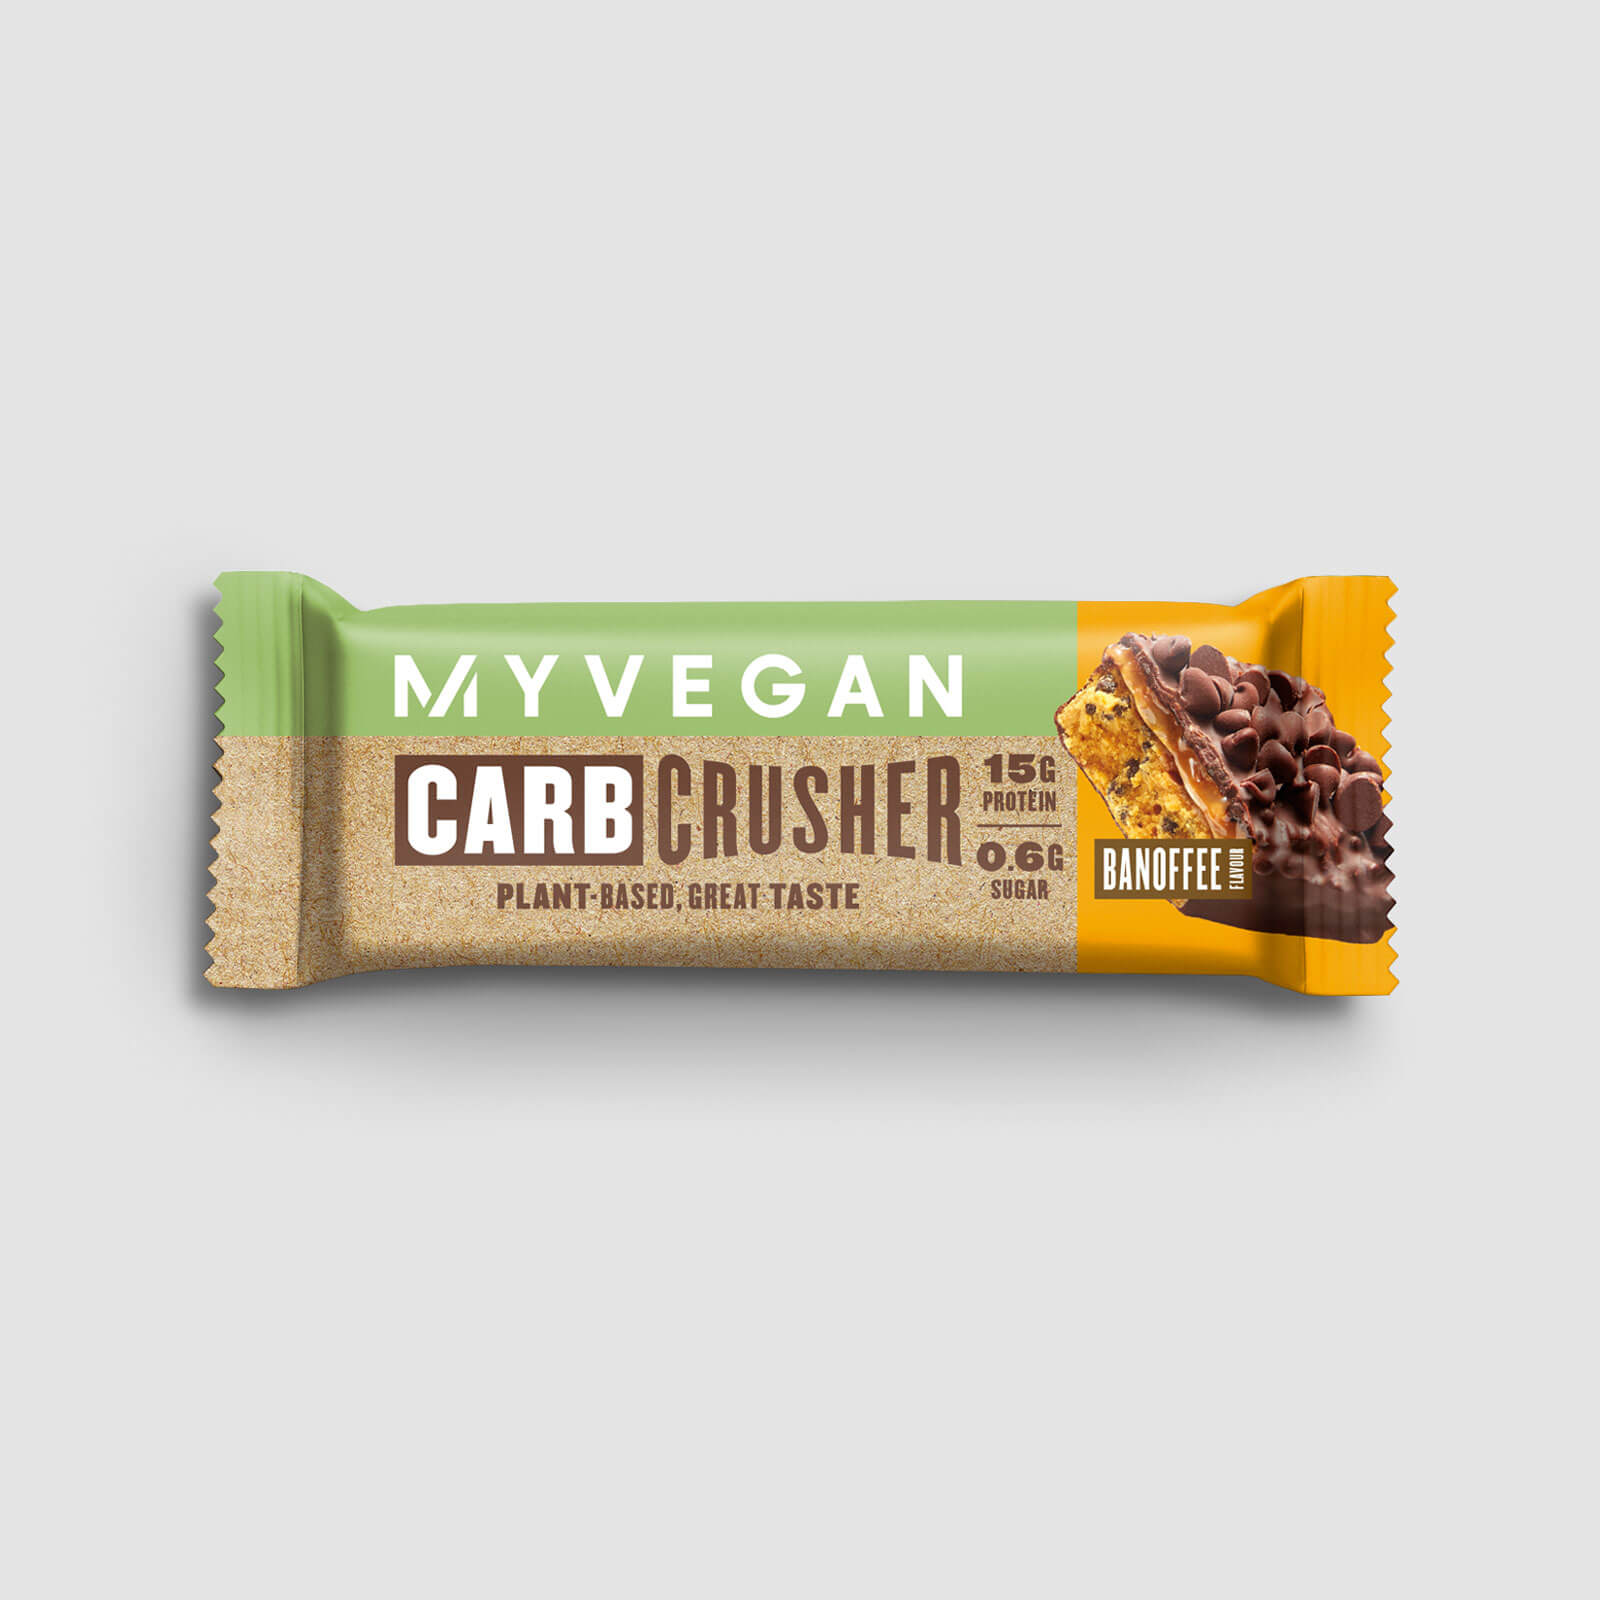 Myprotein Vegan Carb Crusher (Sample) - Banoffee